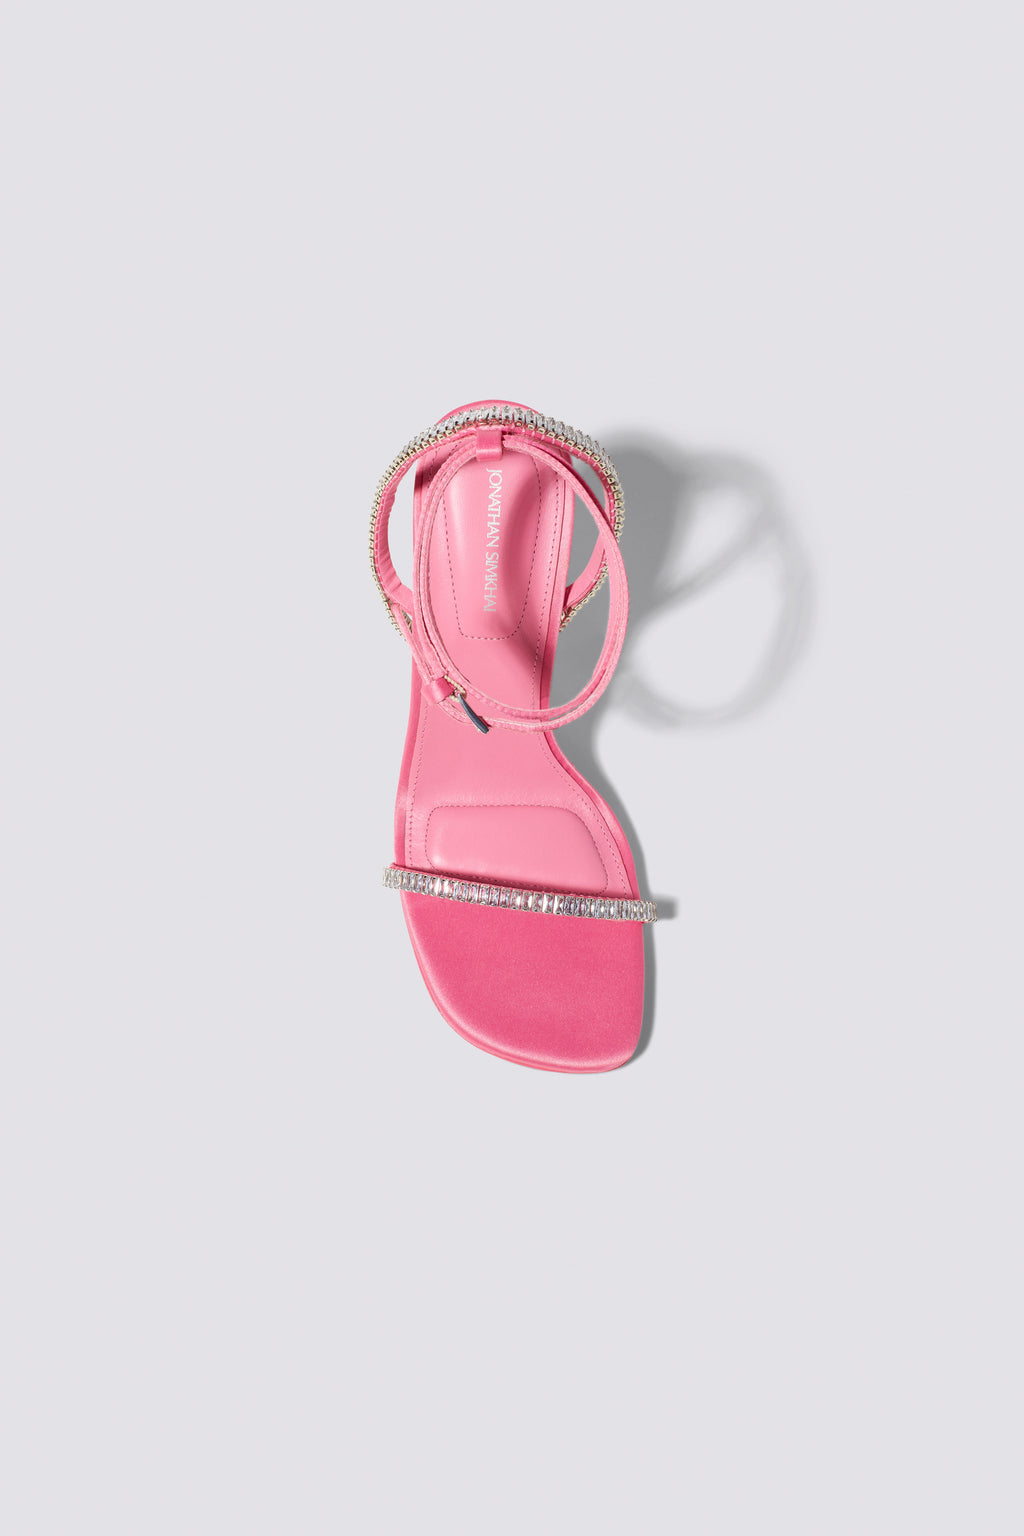 Luxon Crystal Heeled Sandal